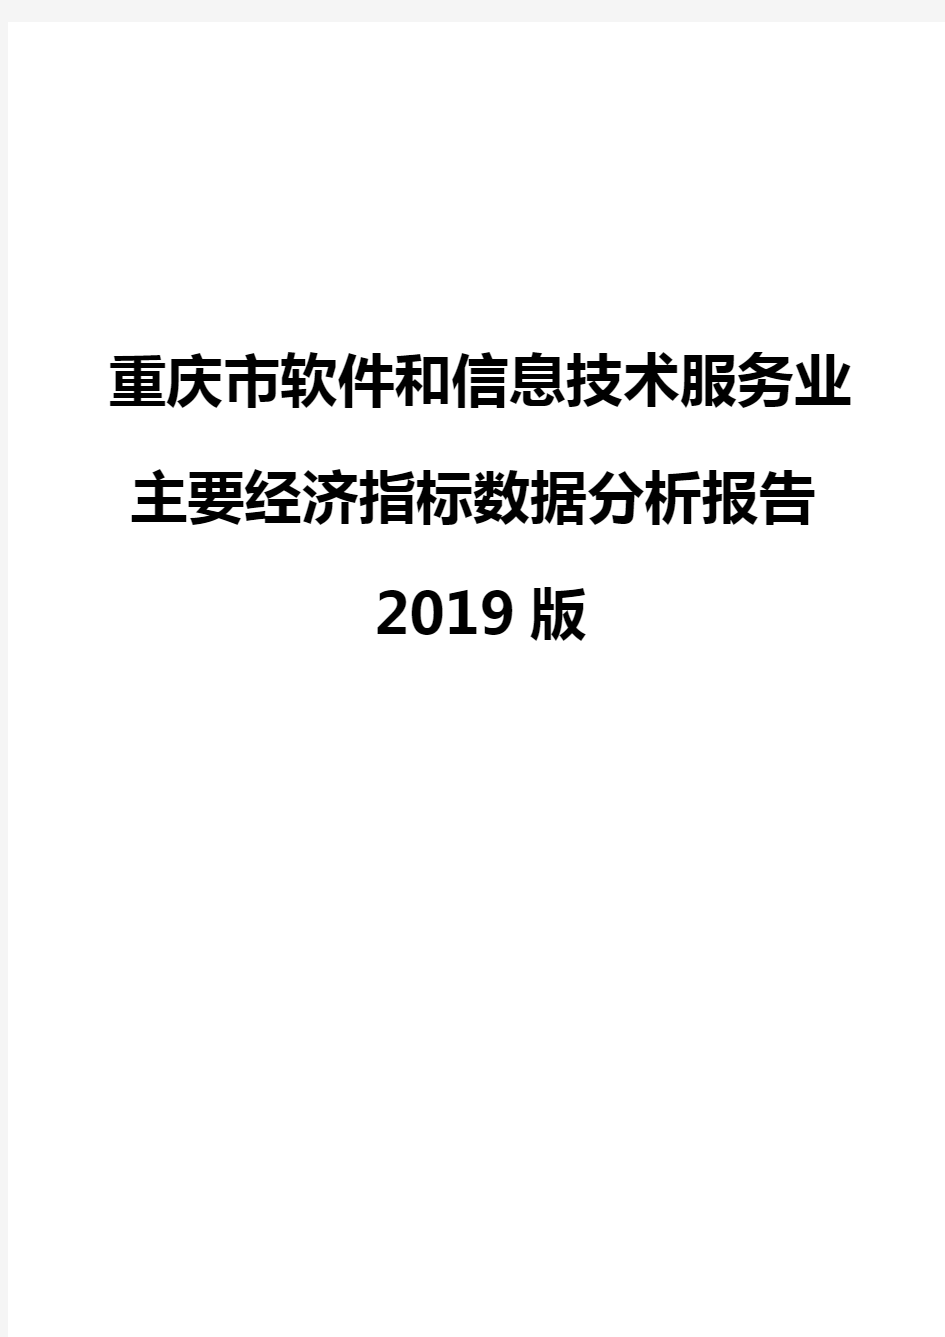 重庆市软件和信息技术服务业主要经济指标数据分析报告2019版